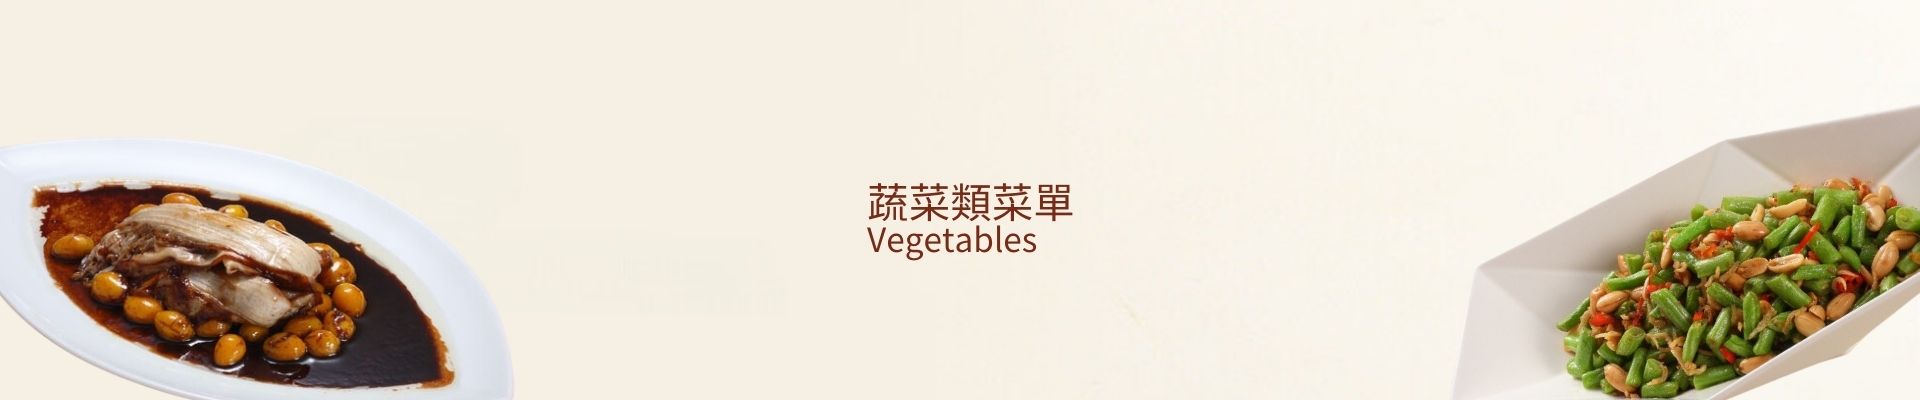 蔬菜類菜單